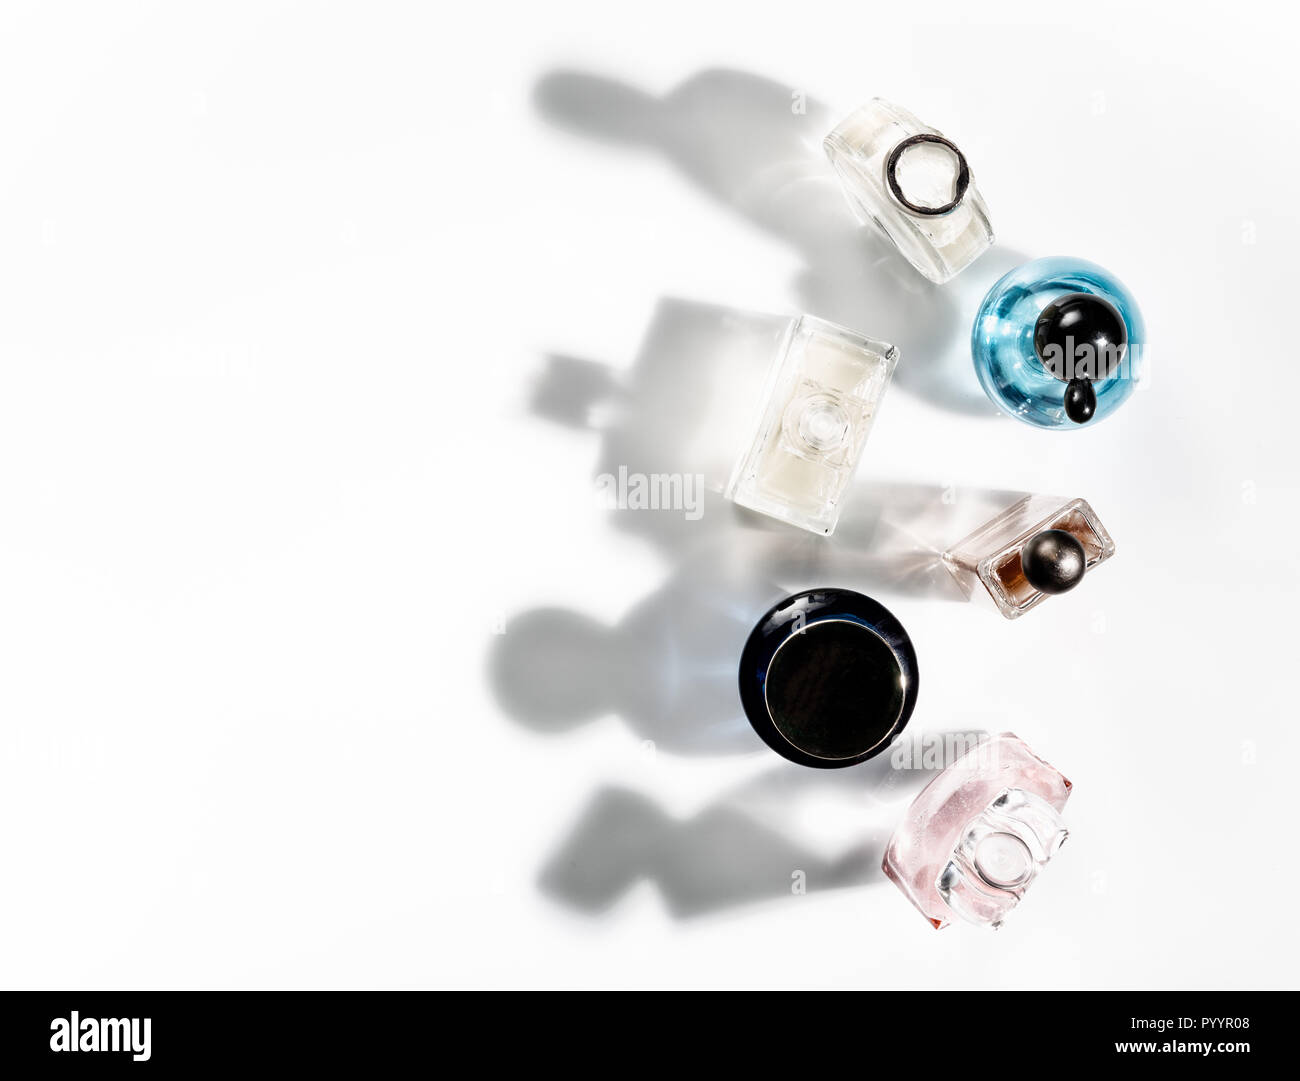 Sombras de frascos de perfume cayendo sobre un fondo blanco. Vista desde arriba. Foto de stock